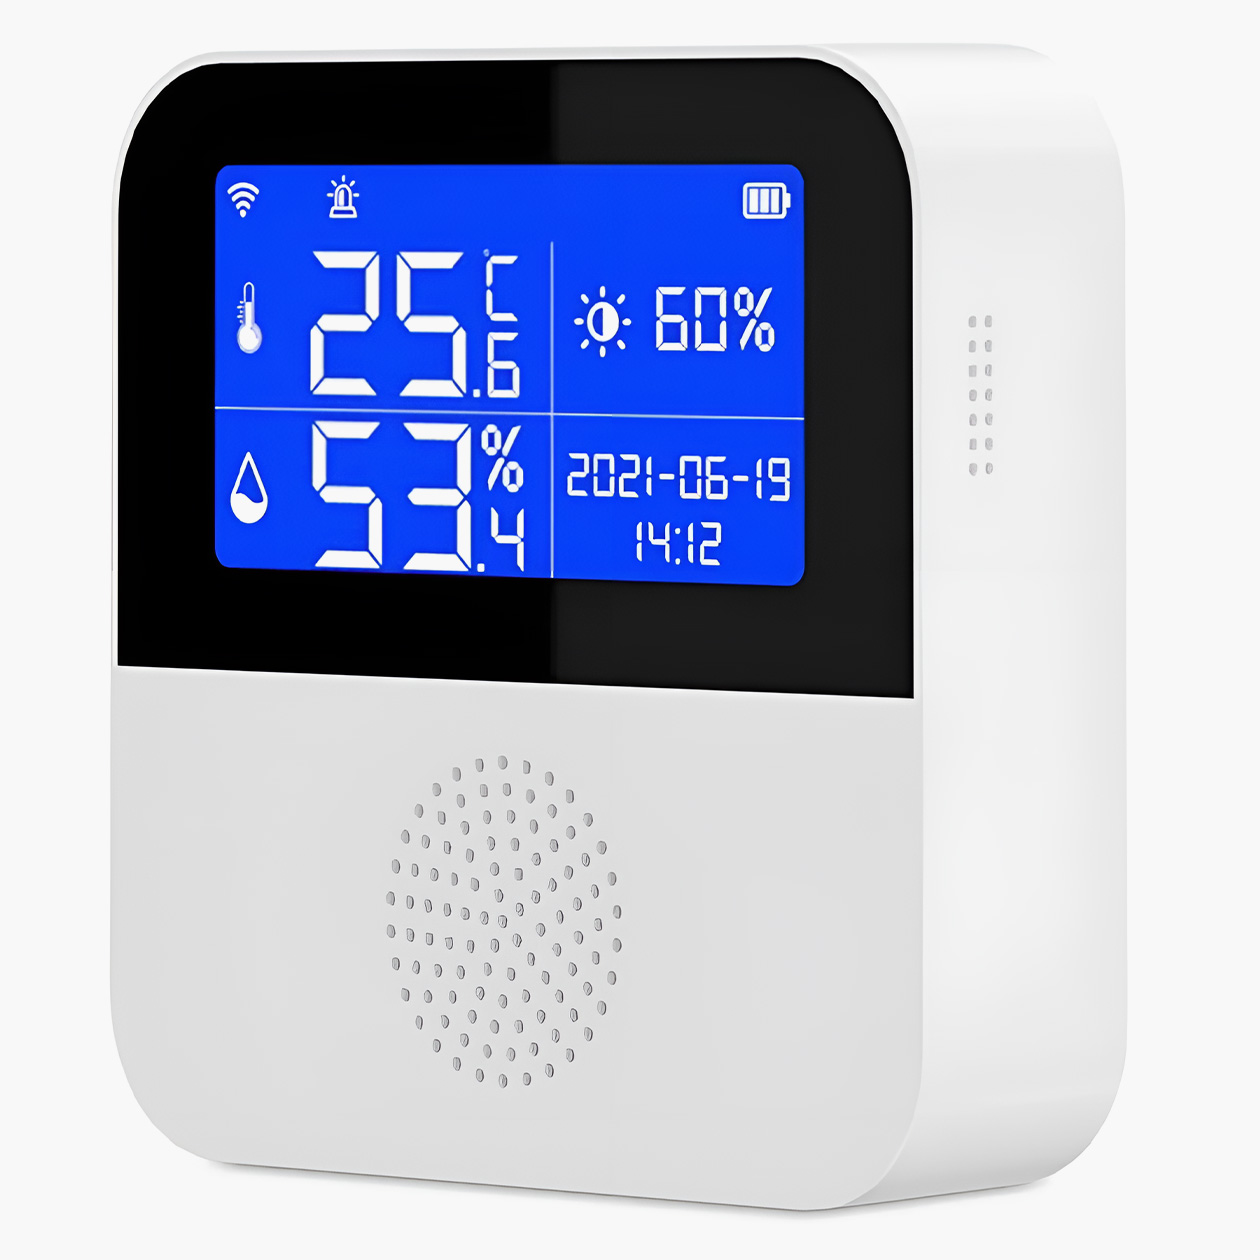 Умный датчик, который показывает температуру, влажность и освещенность. Может контролировать настройки микроклимата через «Умный дом». В комплекте есть выносной датчик для замера внешней температуры. Цена: 2787 ₽